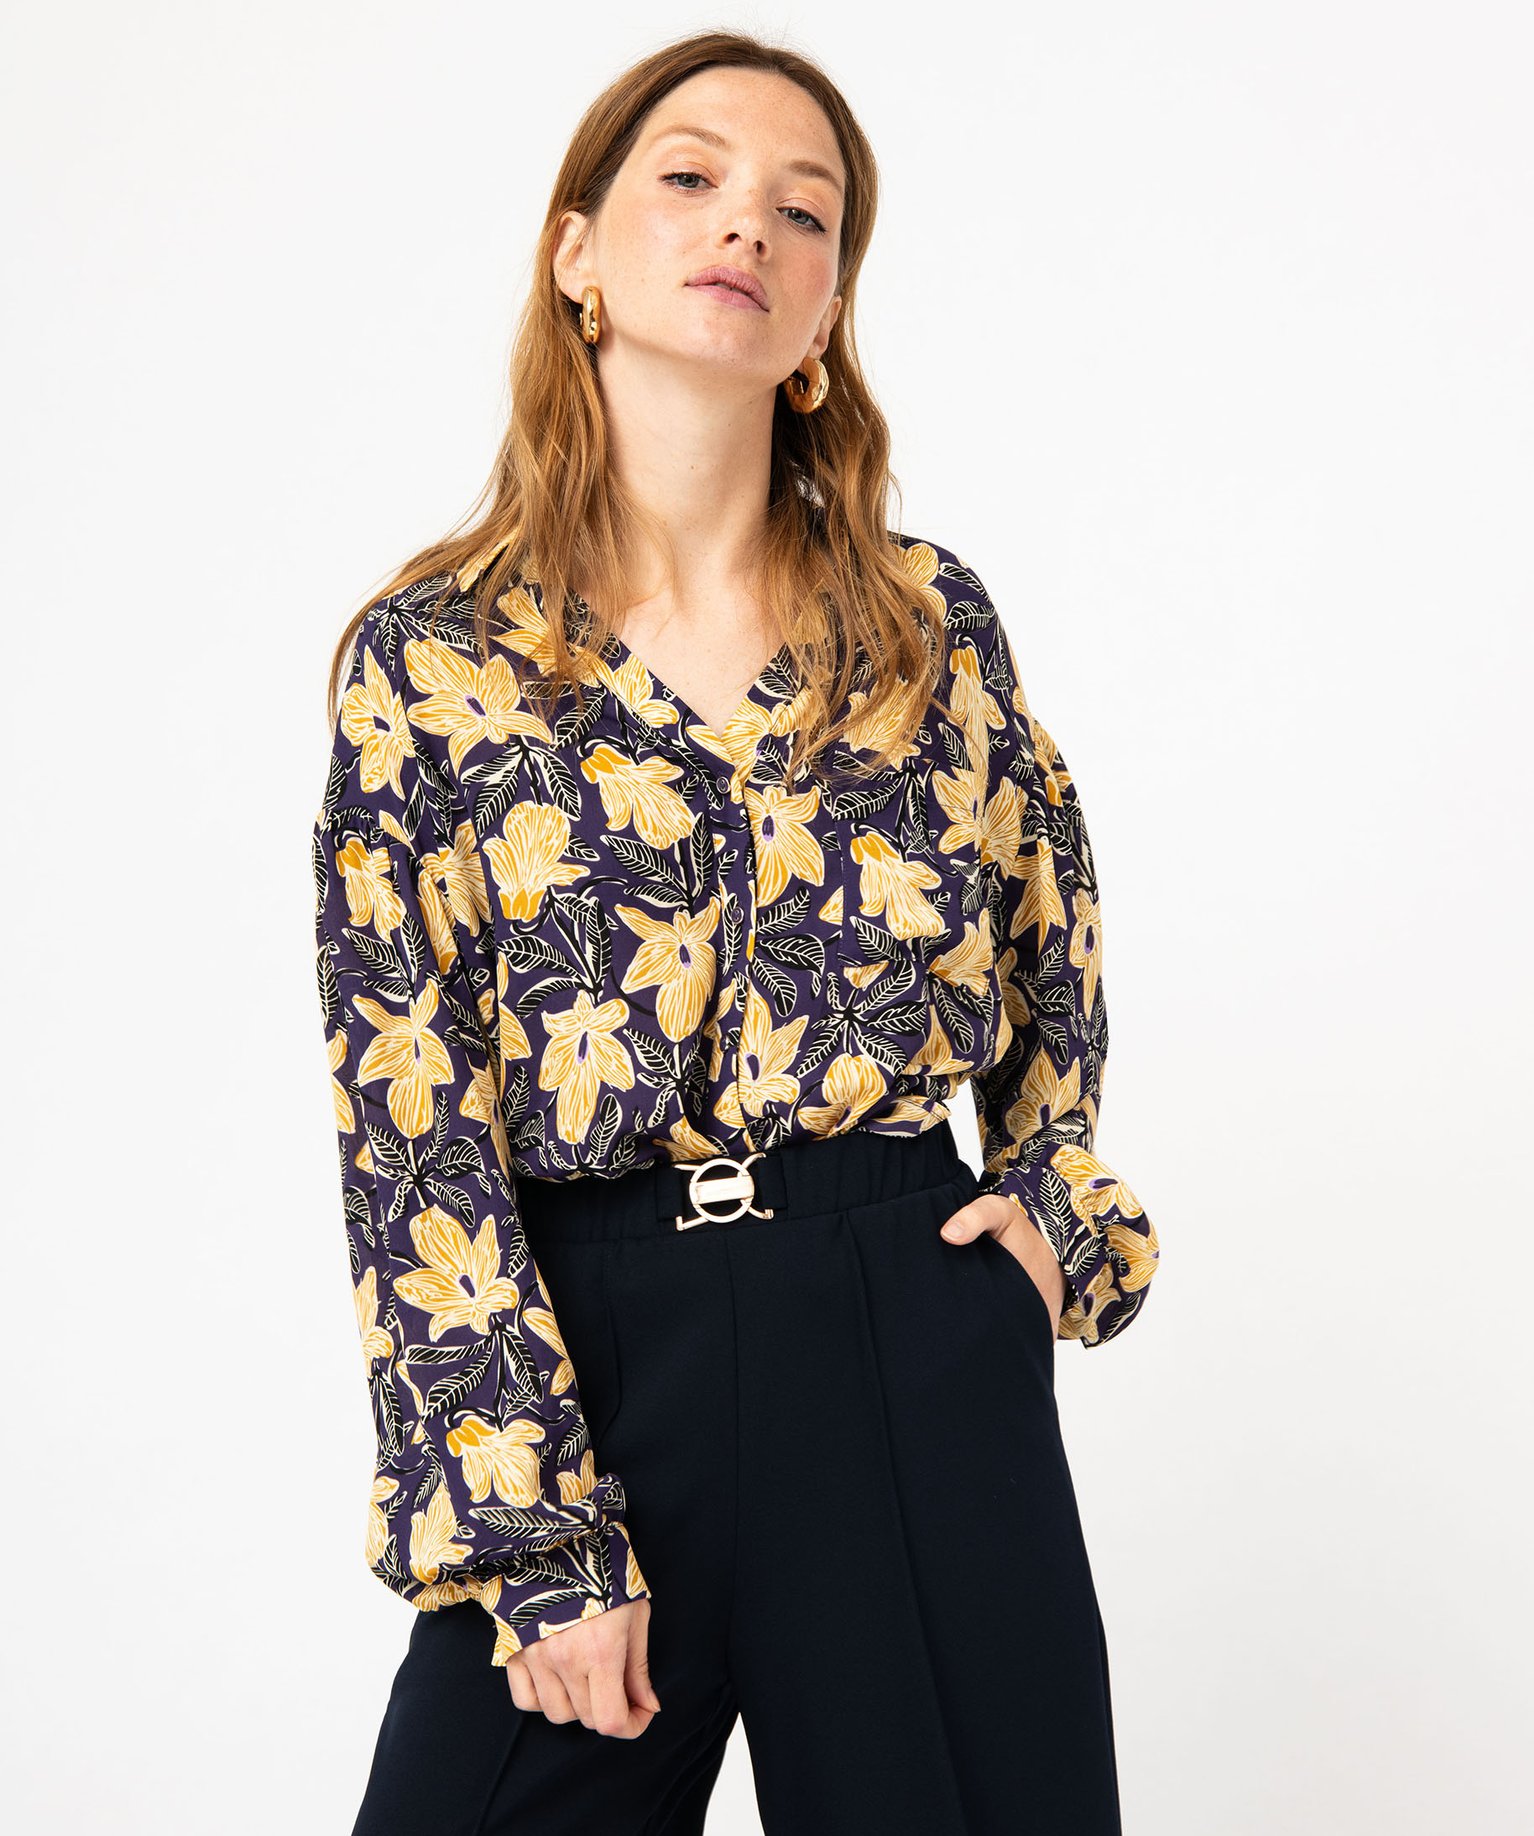 chemise a motifs fleuris femme imprime chemisiers